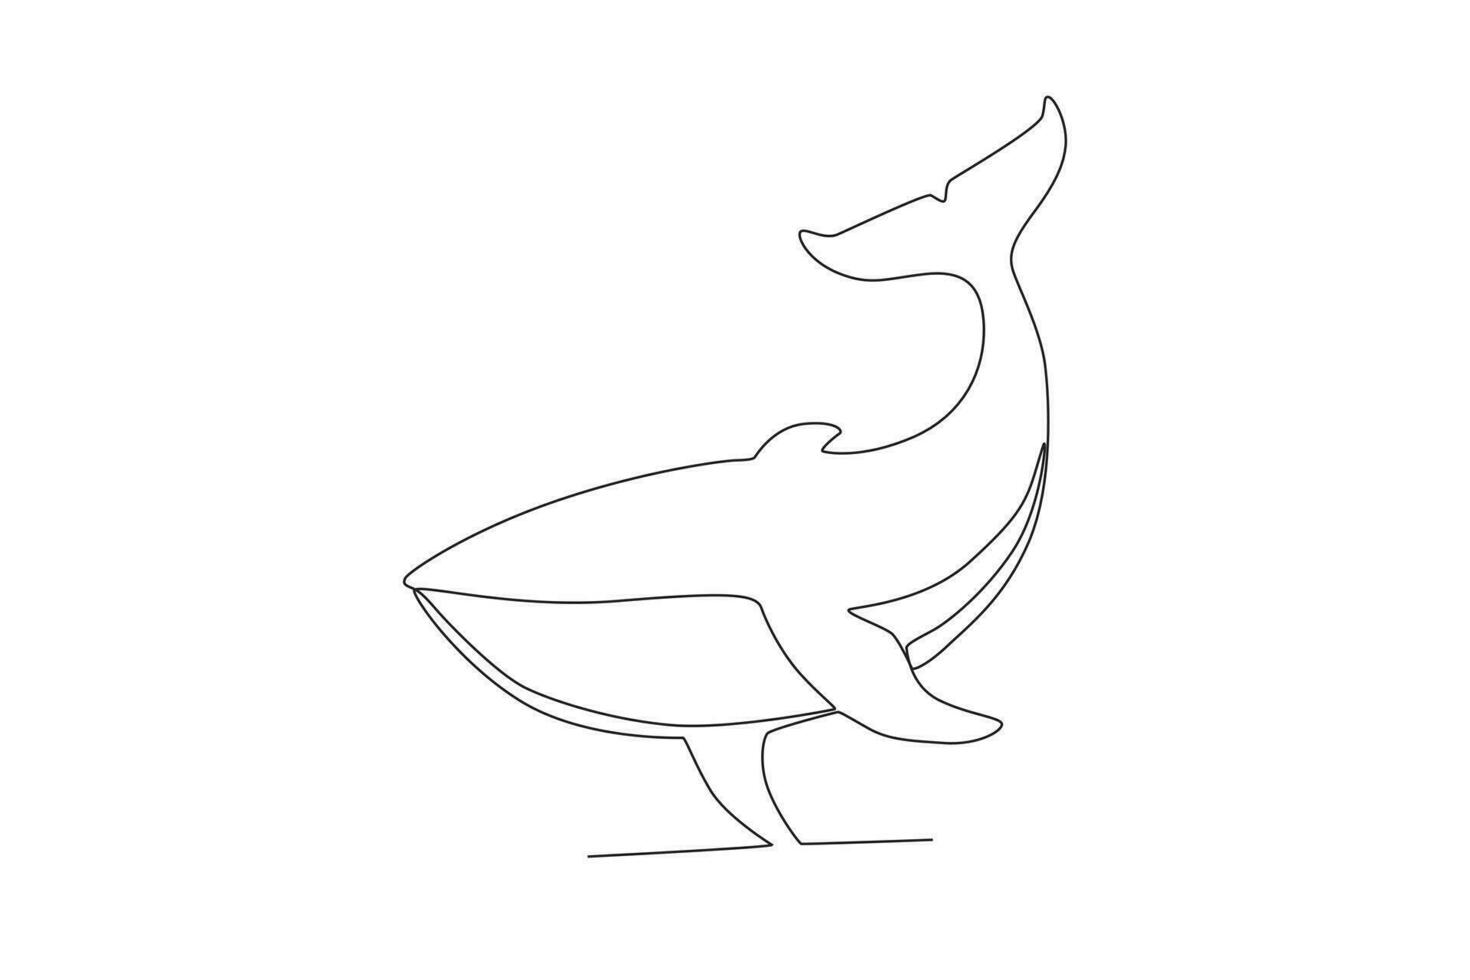 Célibataire un ligne dessin de une baleine. continu ligne dessiner conception graphique vecteur illustration.